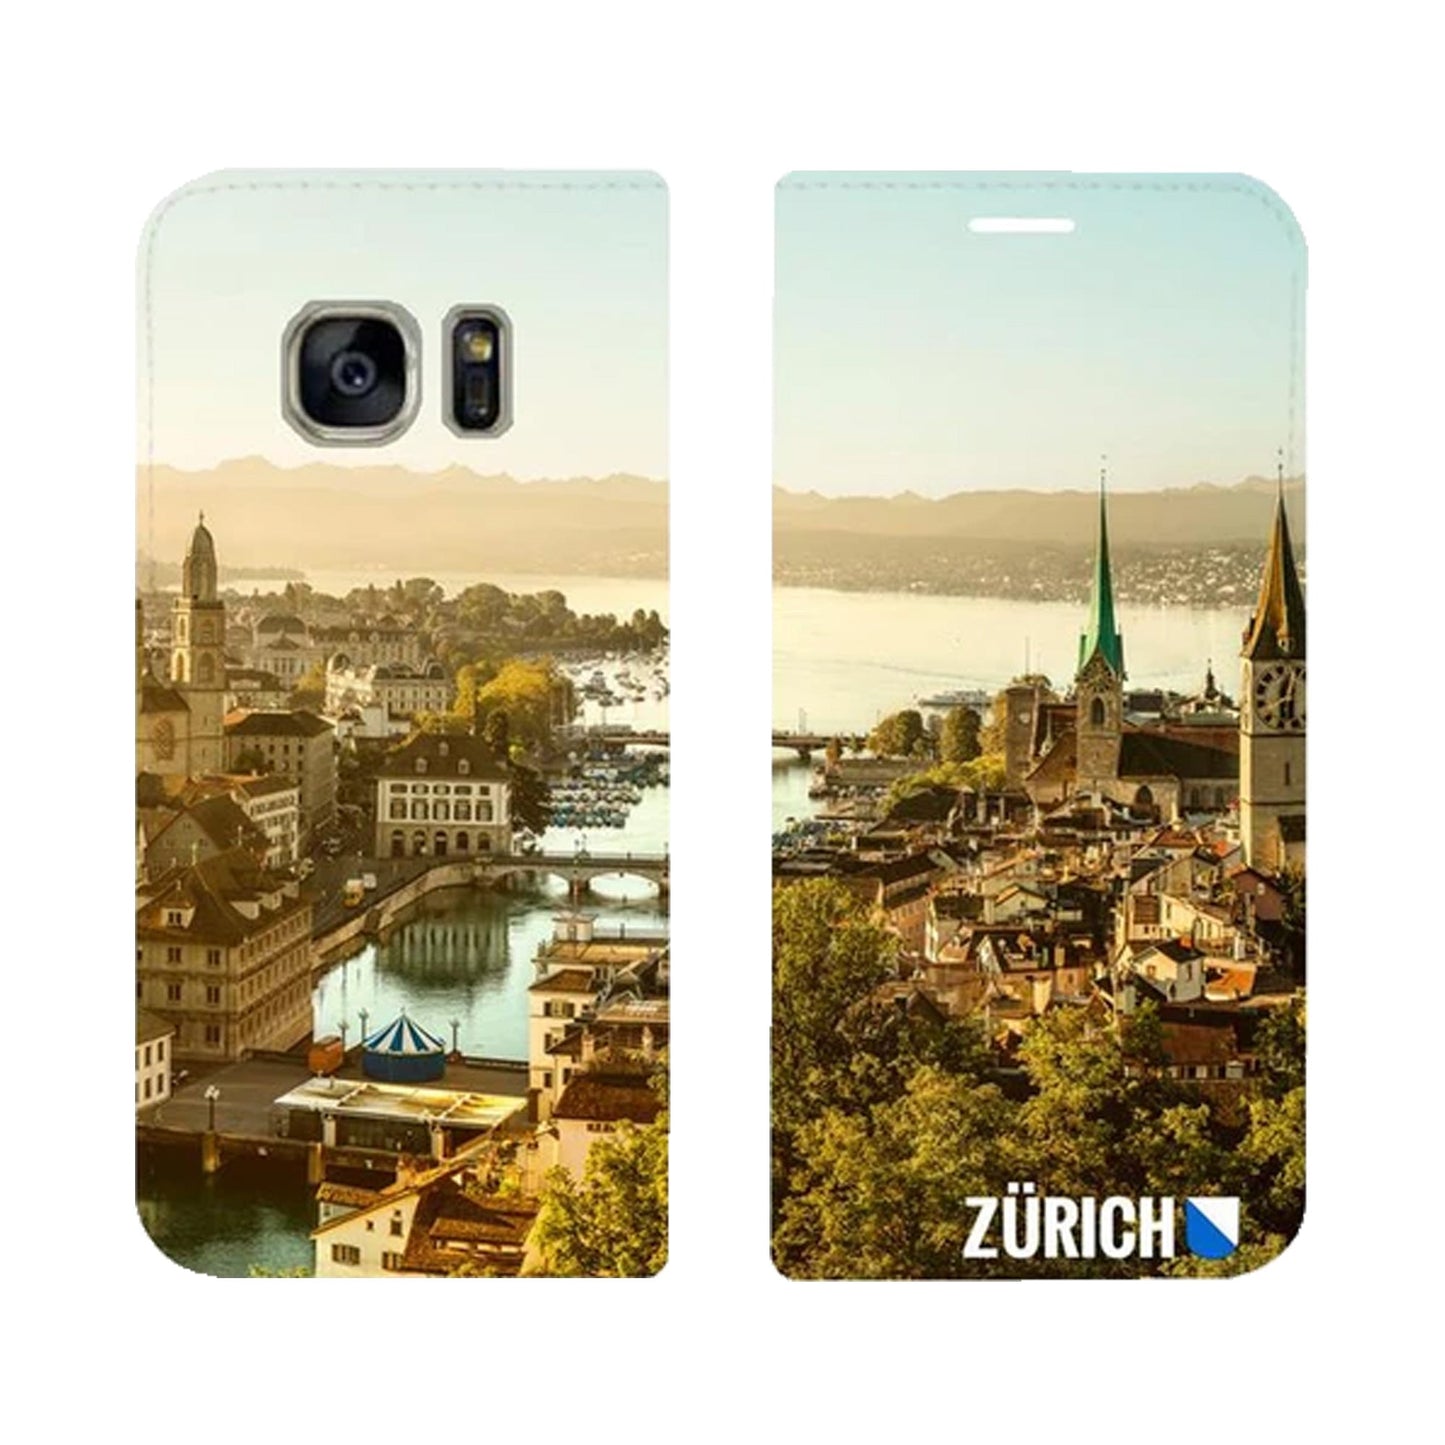 Zürich City von Oben Panorama für Samsung Galaxy S7 Edge